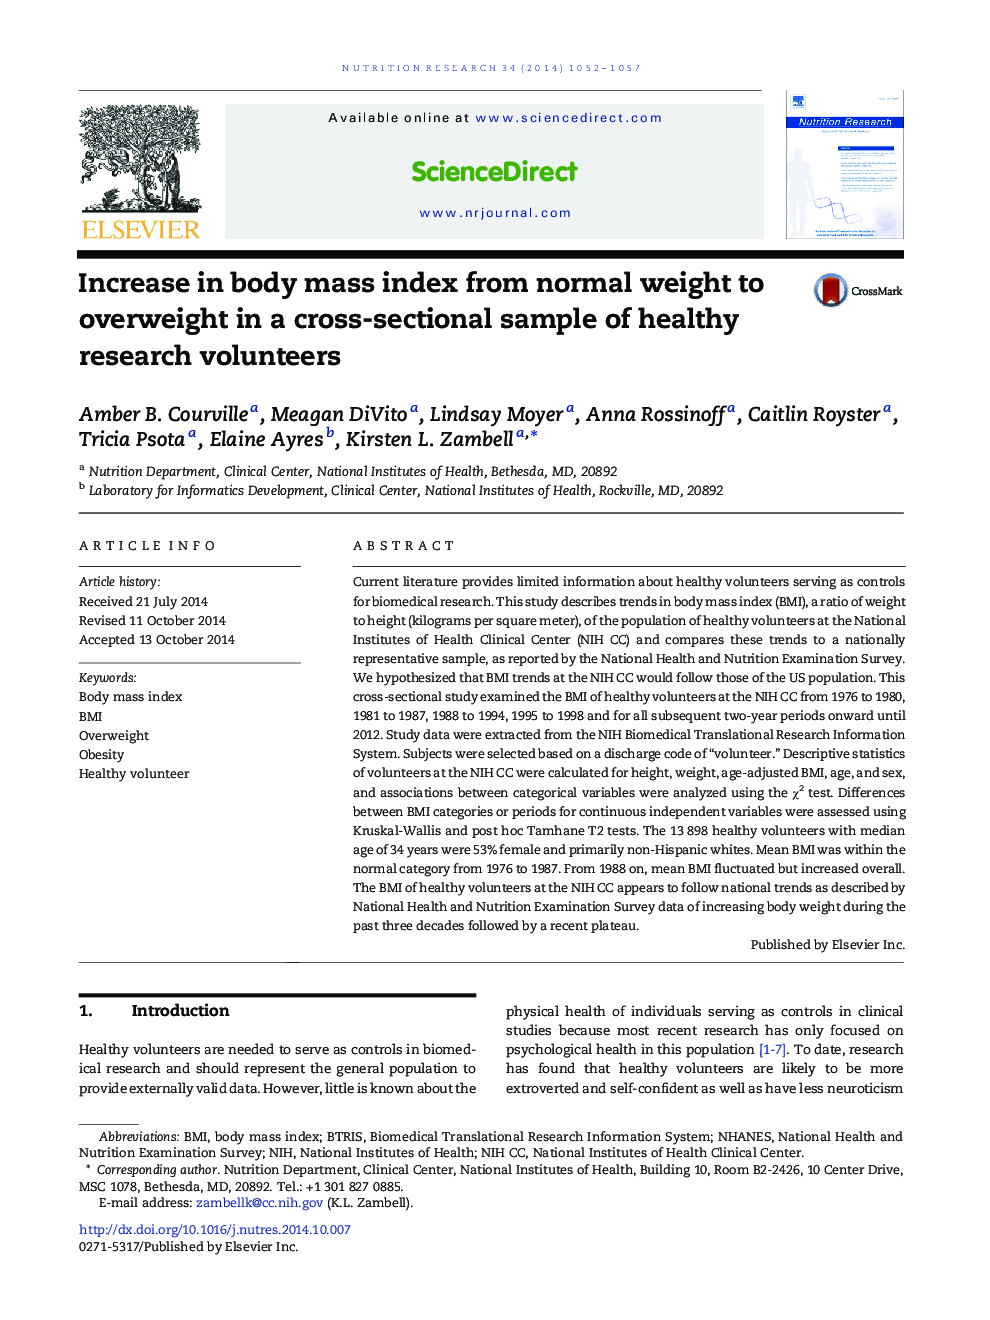 افزایش شاخص توده بدنی از وزن طبیعی تا اضافه وزن در نمونه های مقطعی از داوطلبان سالم تحقیقاتی 